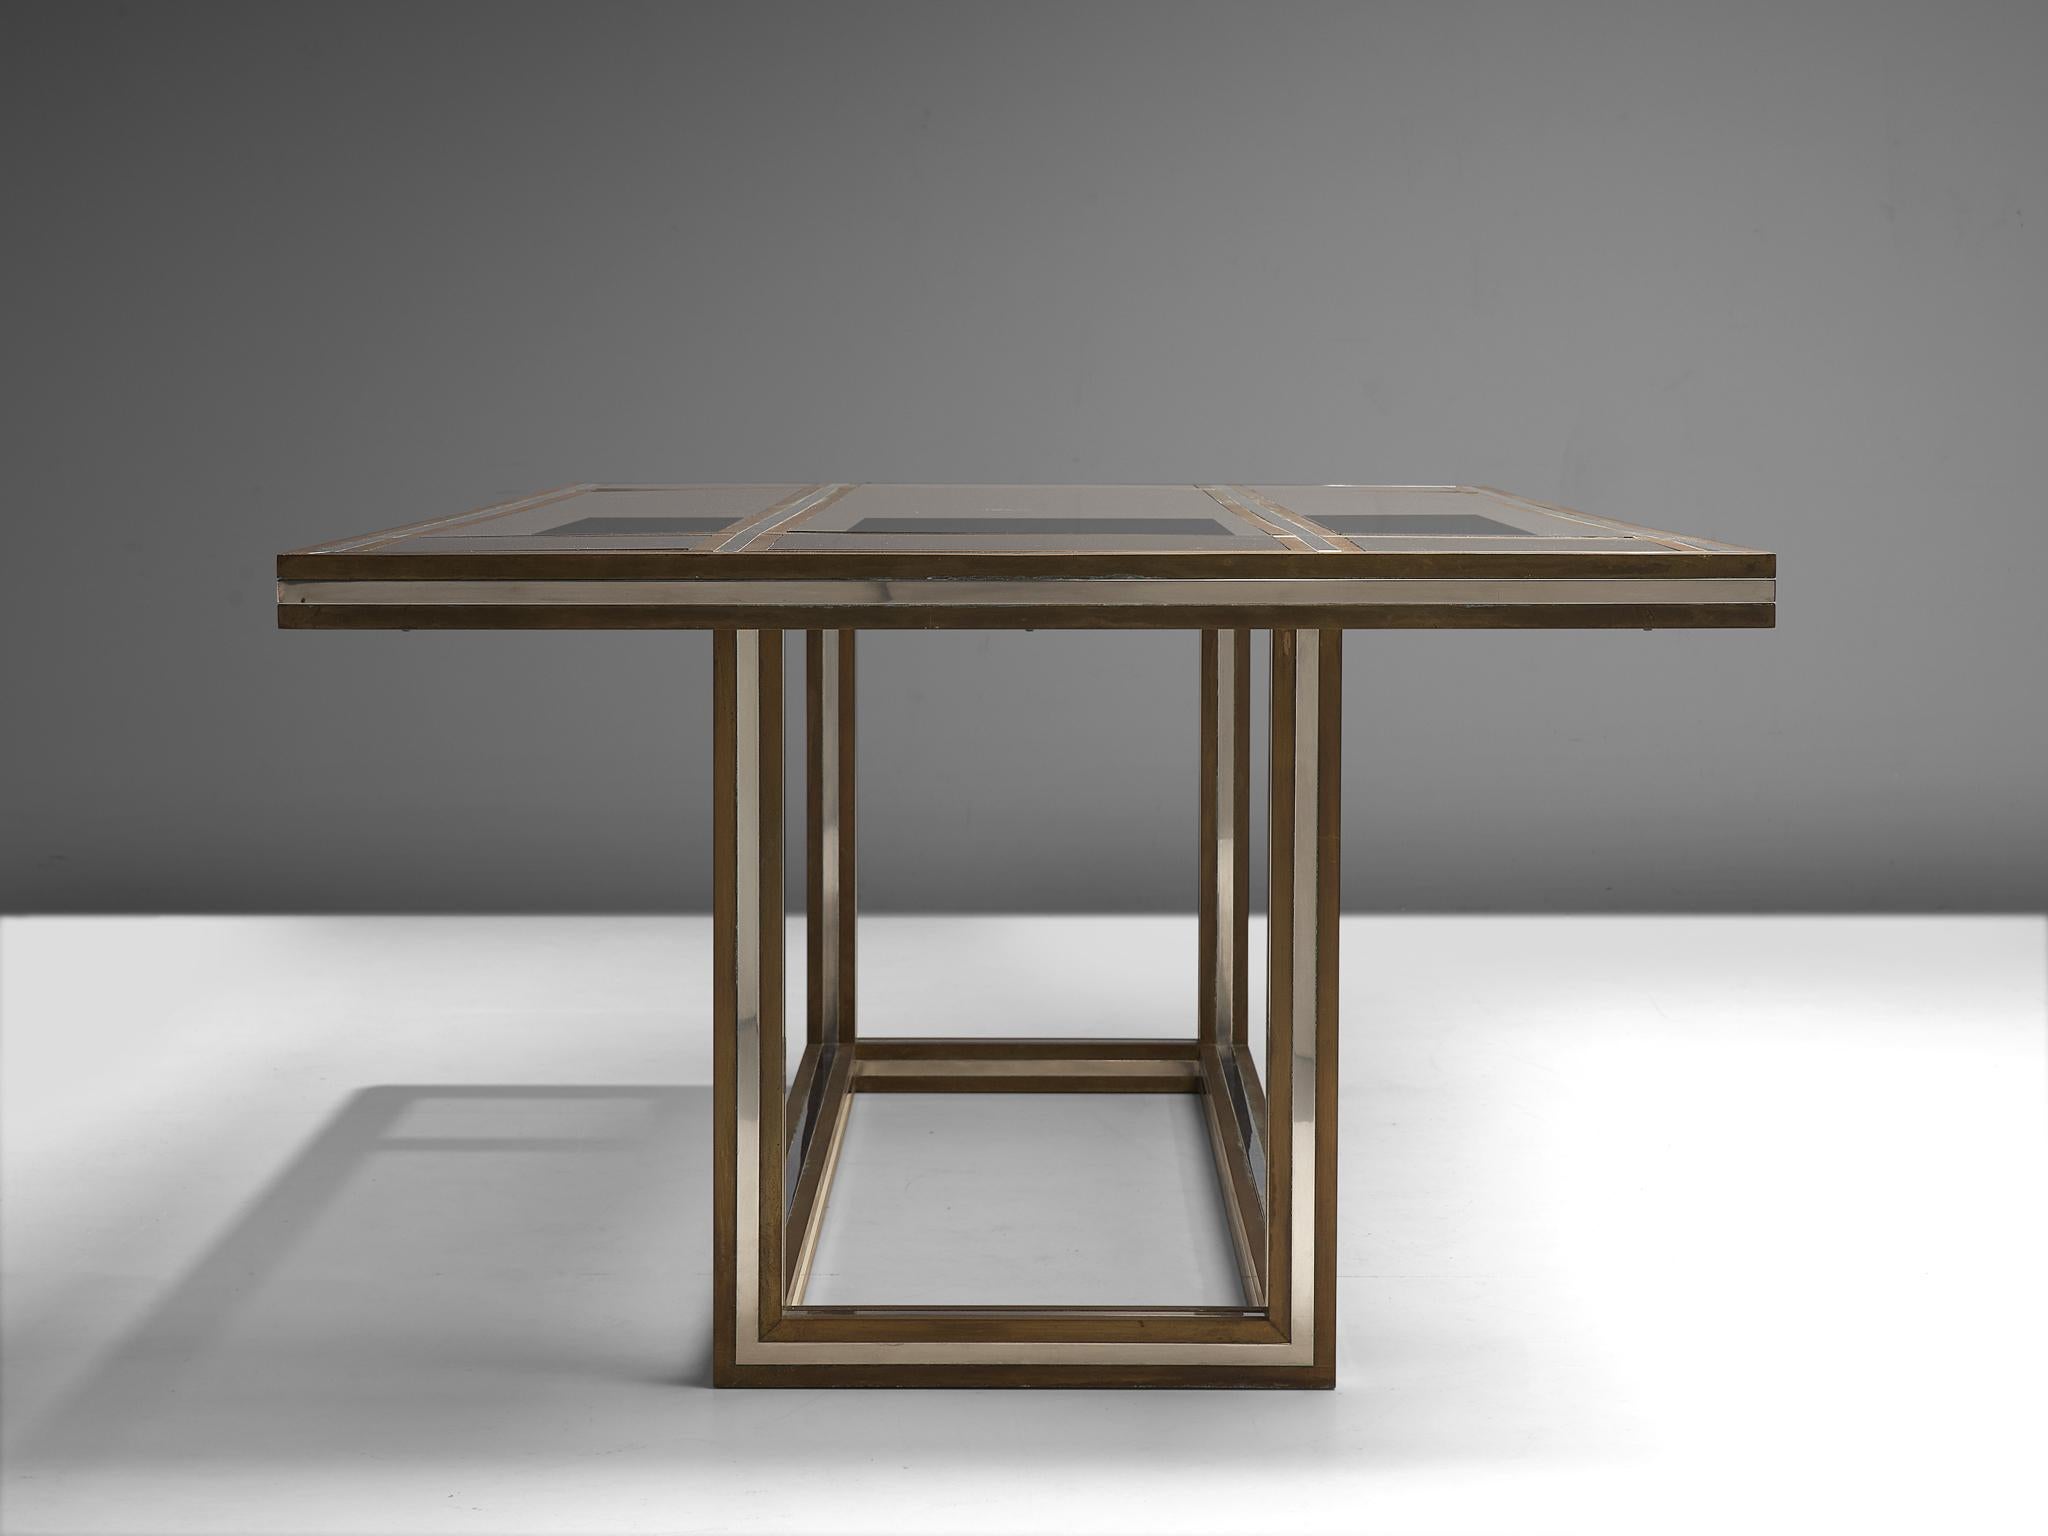 Romeo Rega Rectangular Table in Metal and Glass 1